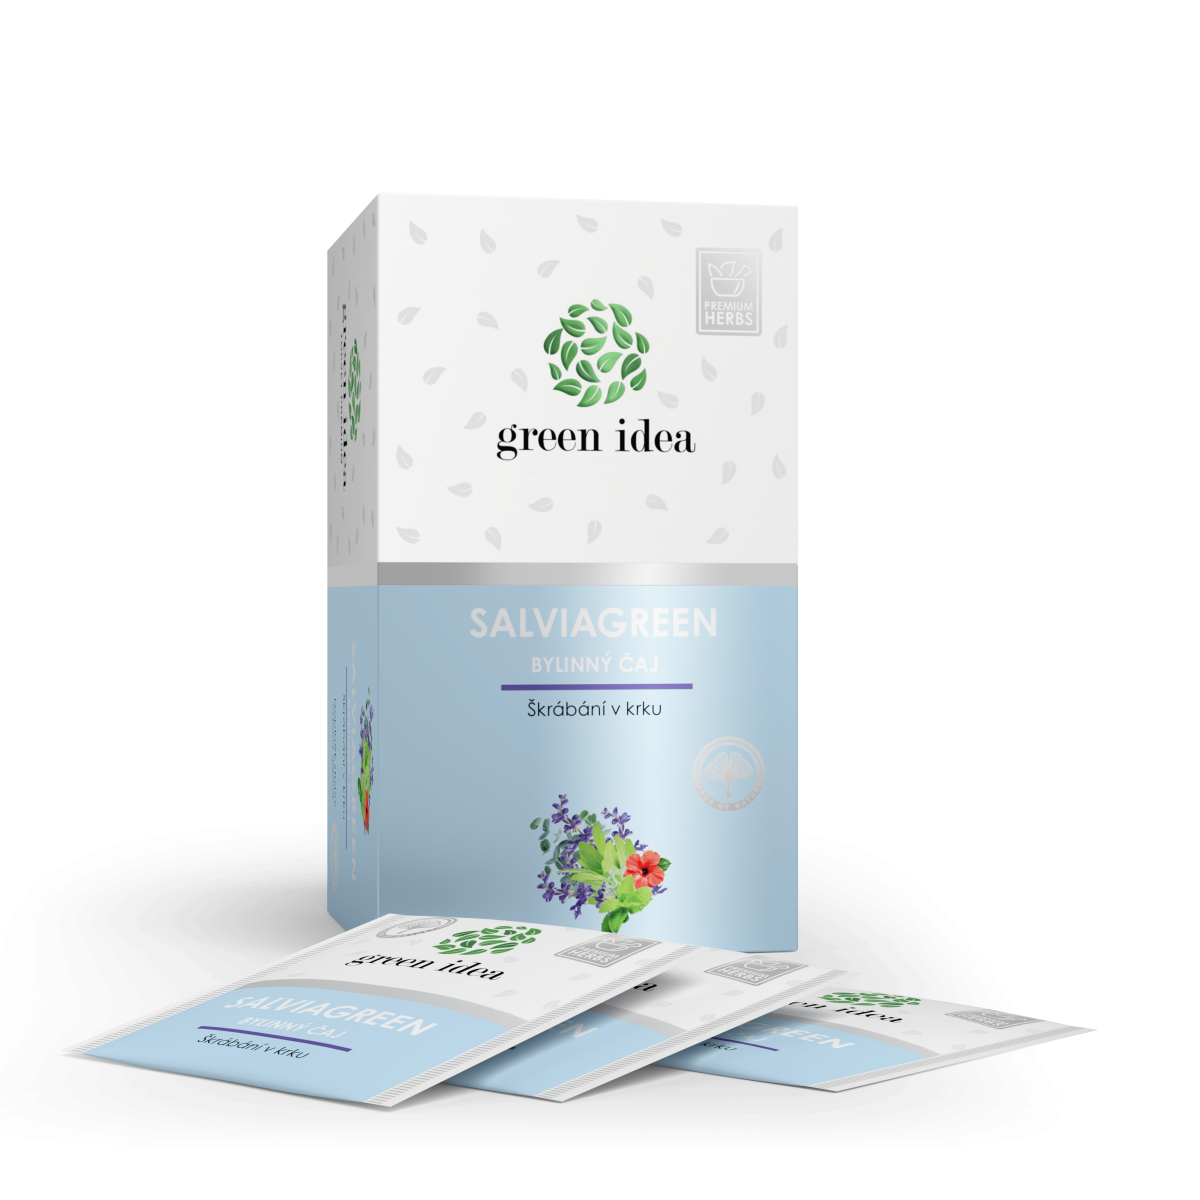 Salviagreen - herbal tea